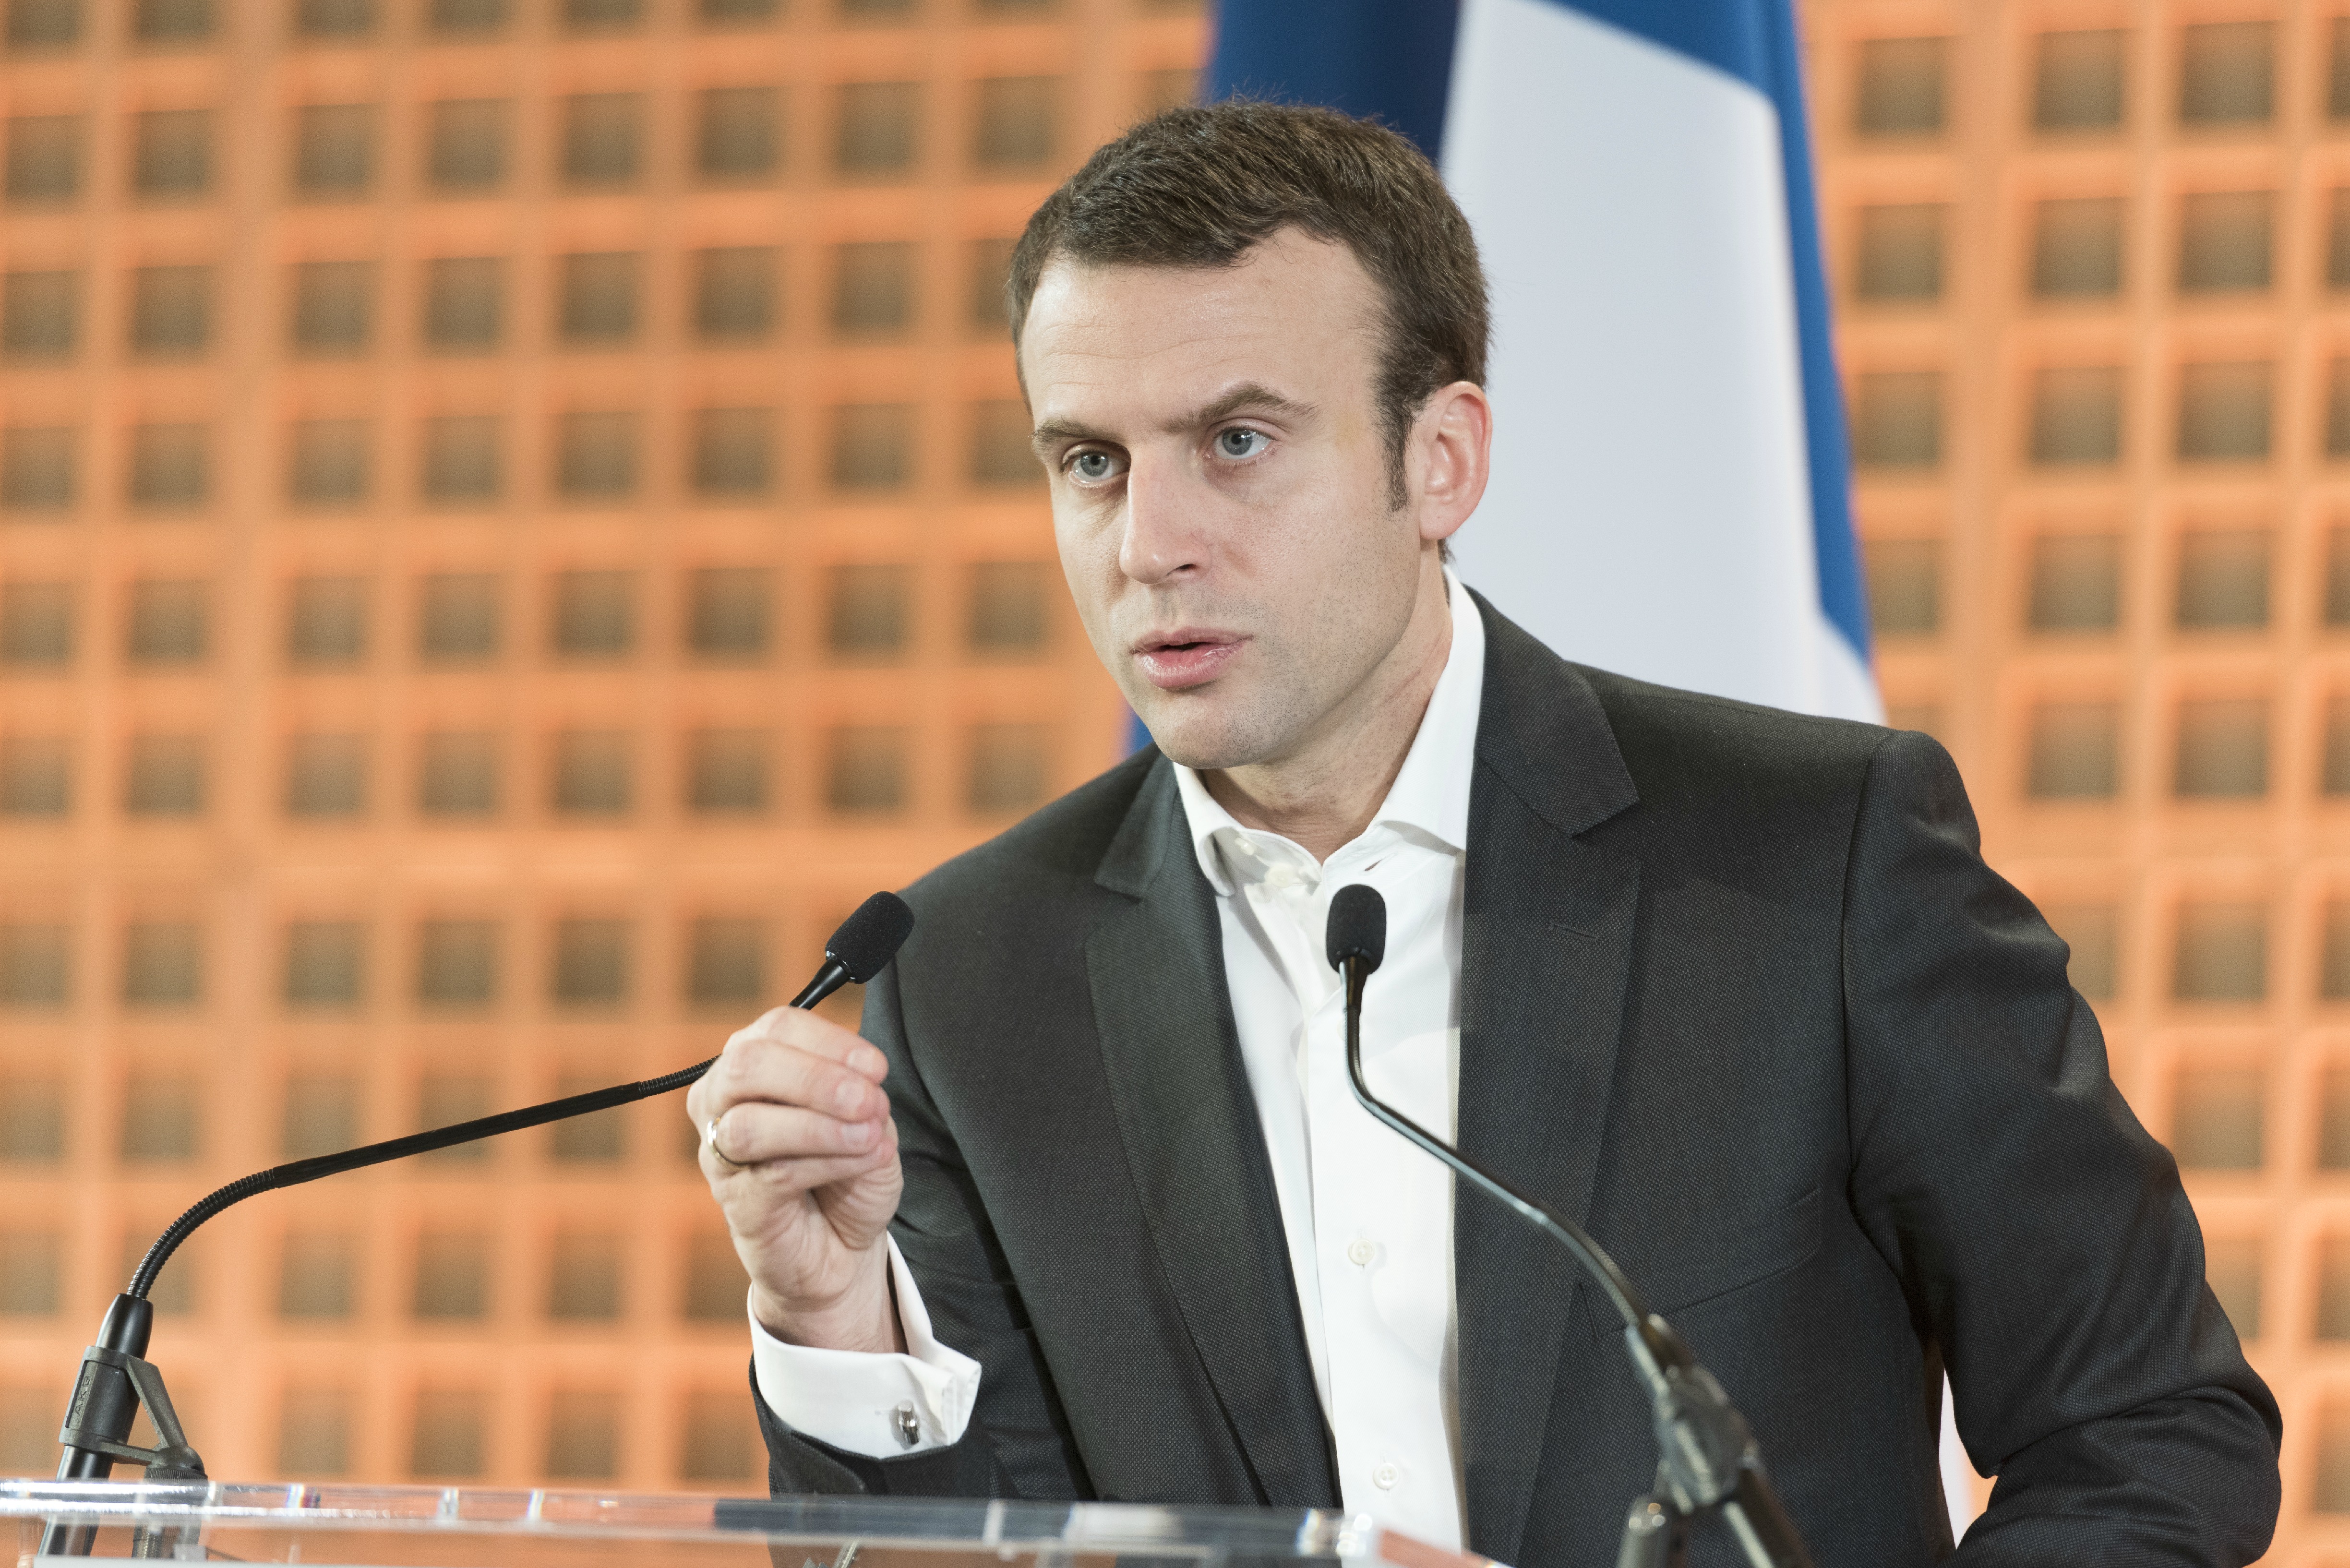 El ministro de Economía y Finanzas francés dijo que podrían levantar las sanciones contra Rusia en el verano